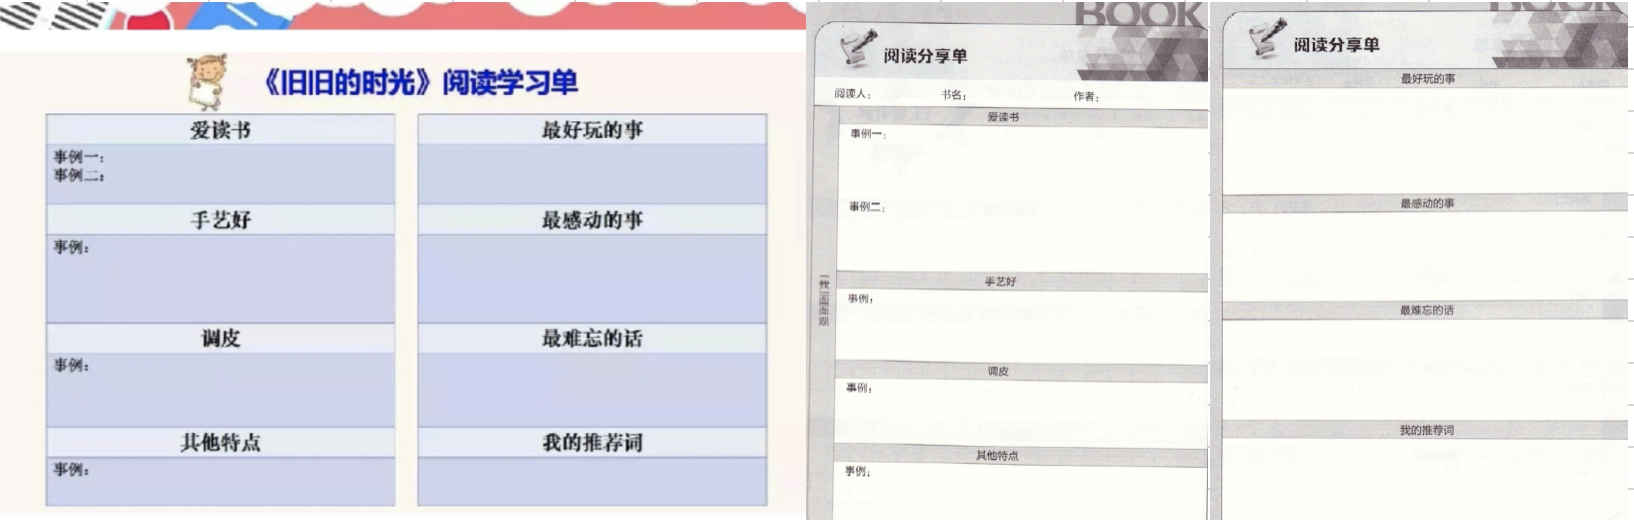 胡红梅《旧旧的时光》阅读学习单（左）和王爱玲书中的阅读分享单（右）对比